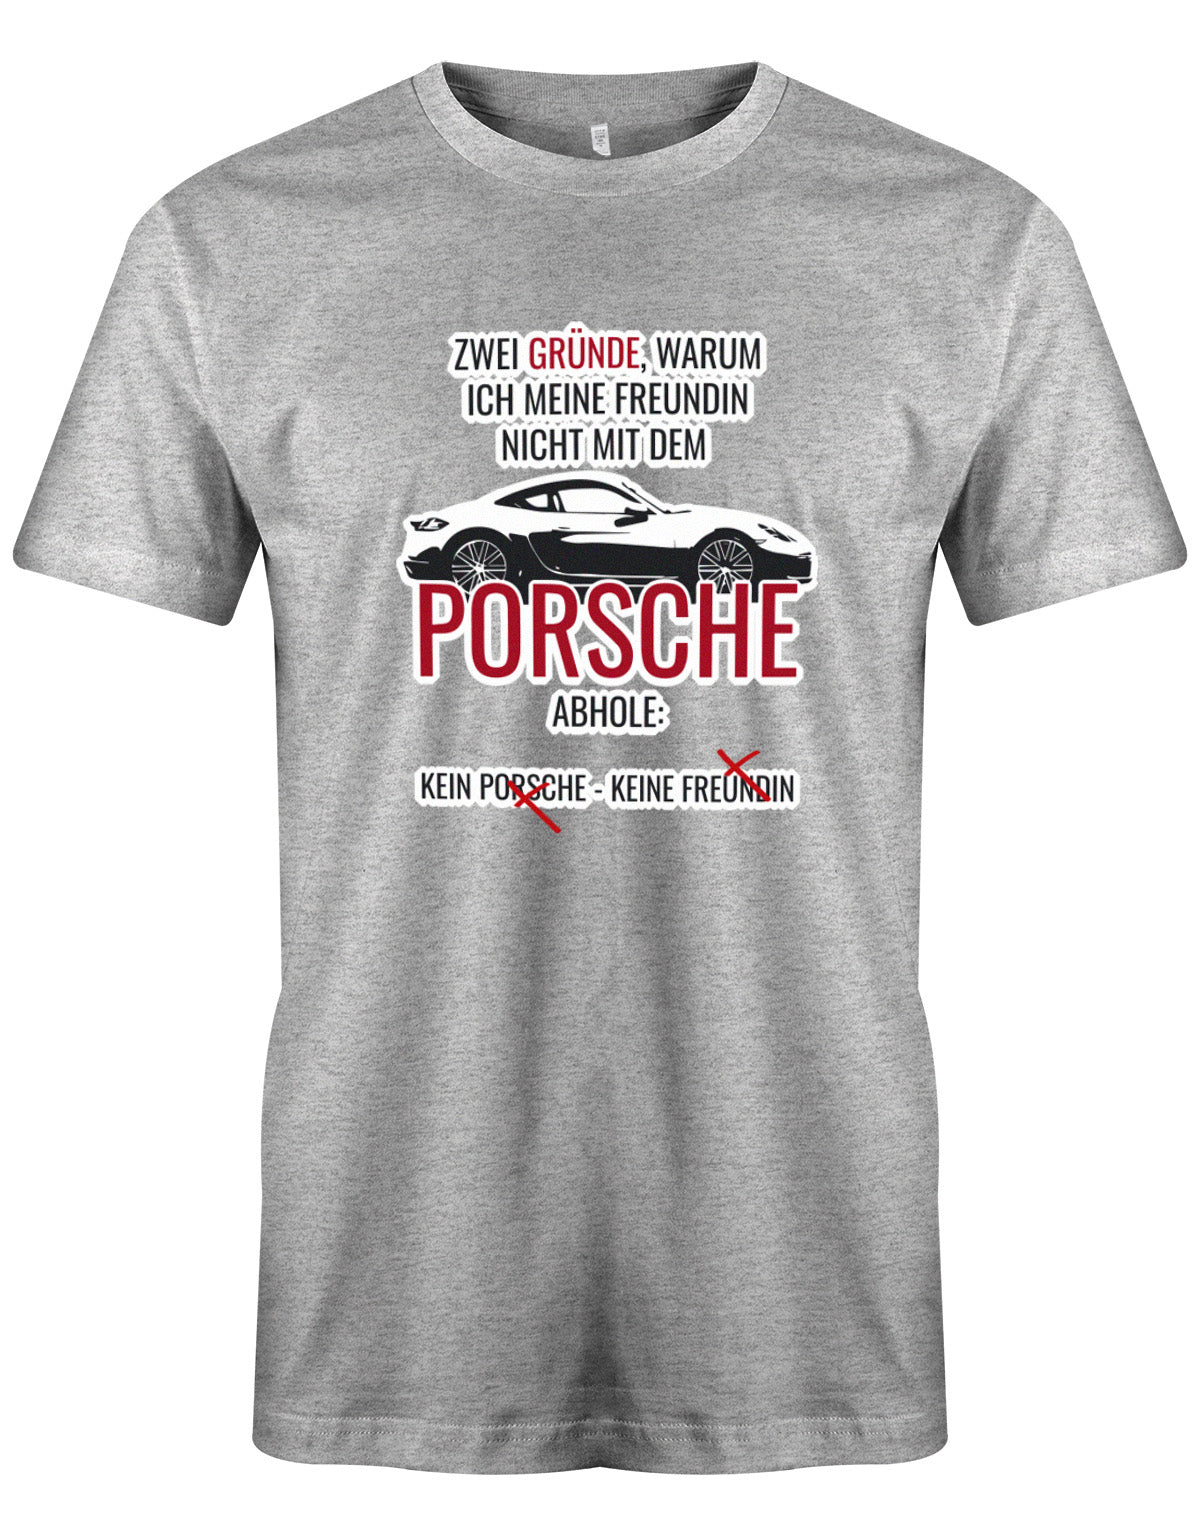 Zwei Gründe warum ich meine Freundin nicht mit dem Porsche abhole - Lustige Sprüche - Herren T-Shirt